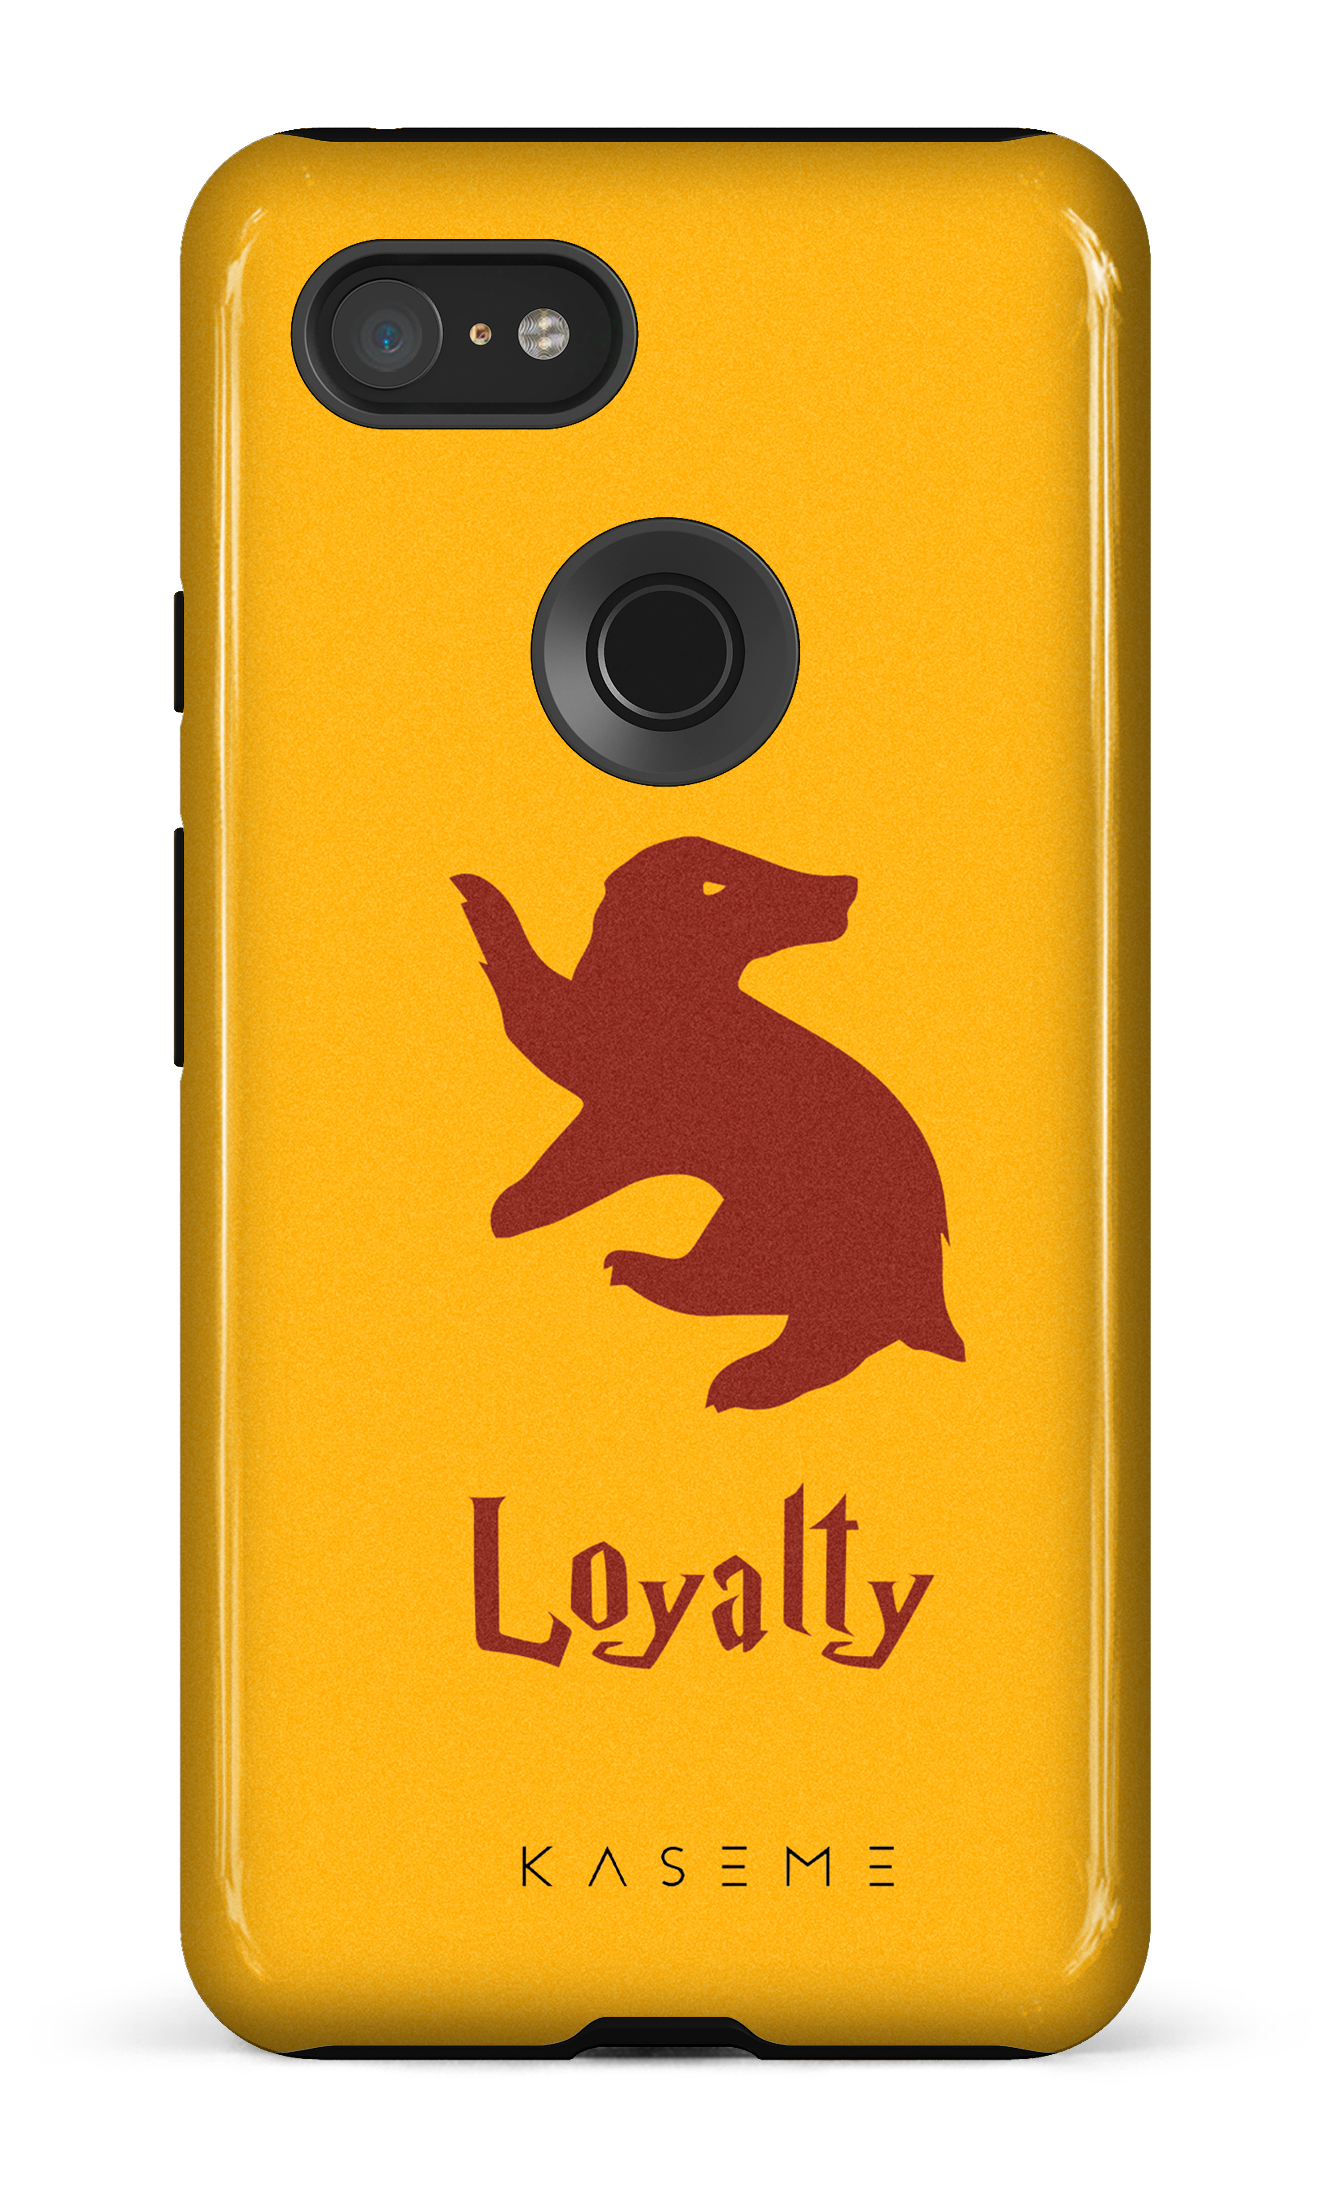 Loyalty - Google Pixel 3 XL